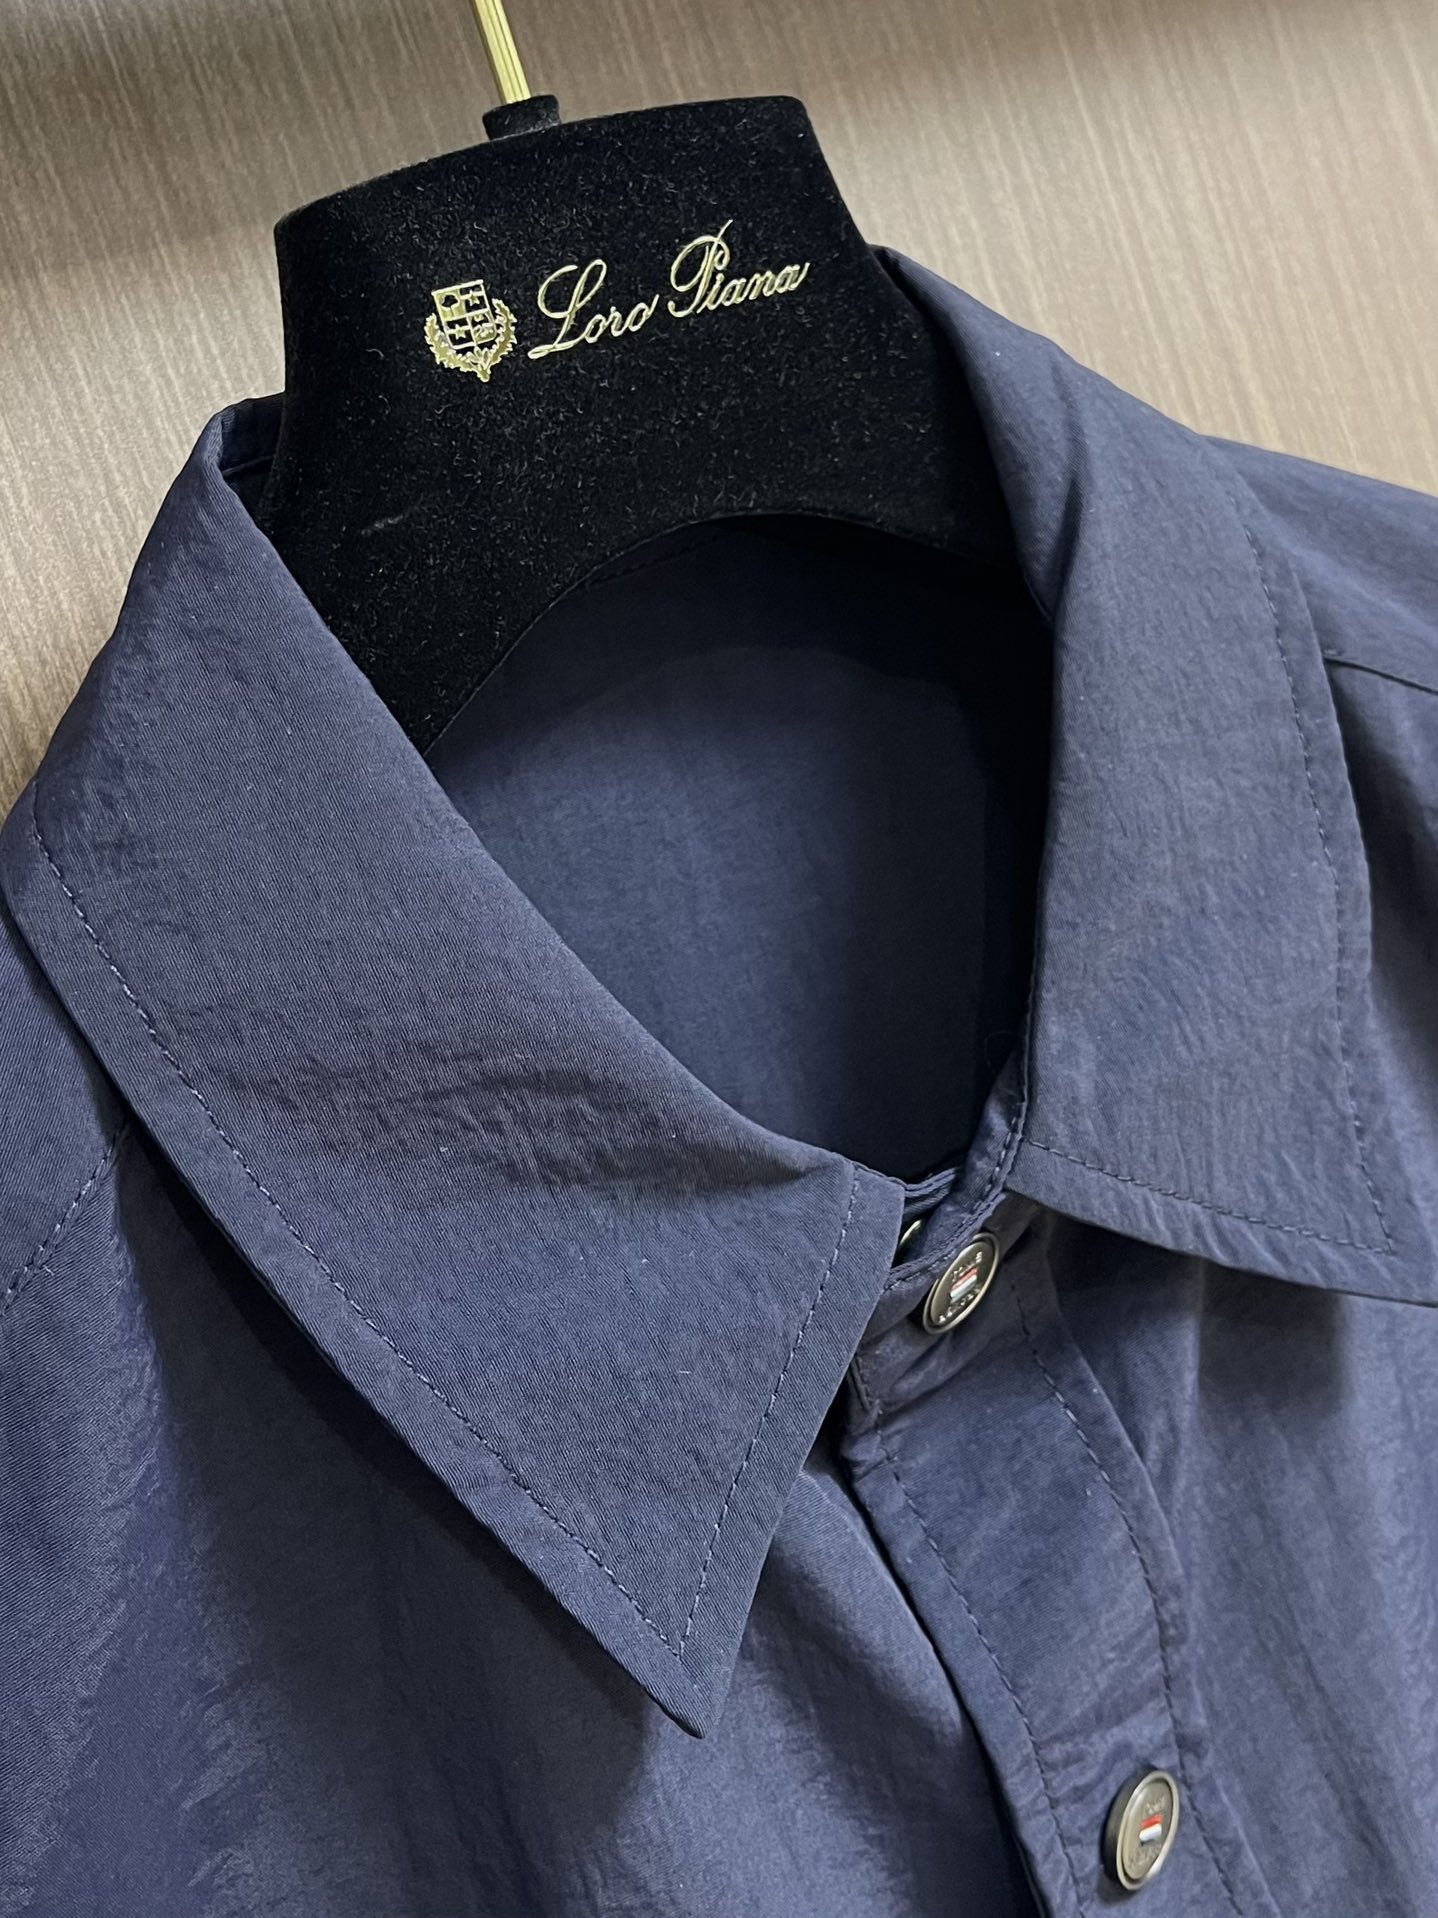 存在感のあるトム・ブラウン人気シャツn級品 両袖にブランドストライプの装飾_5